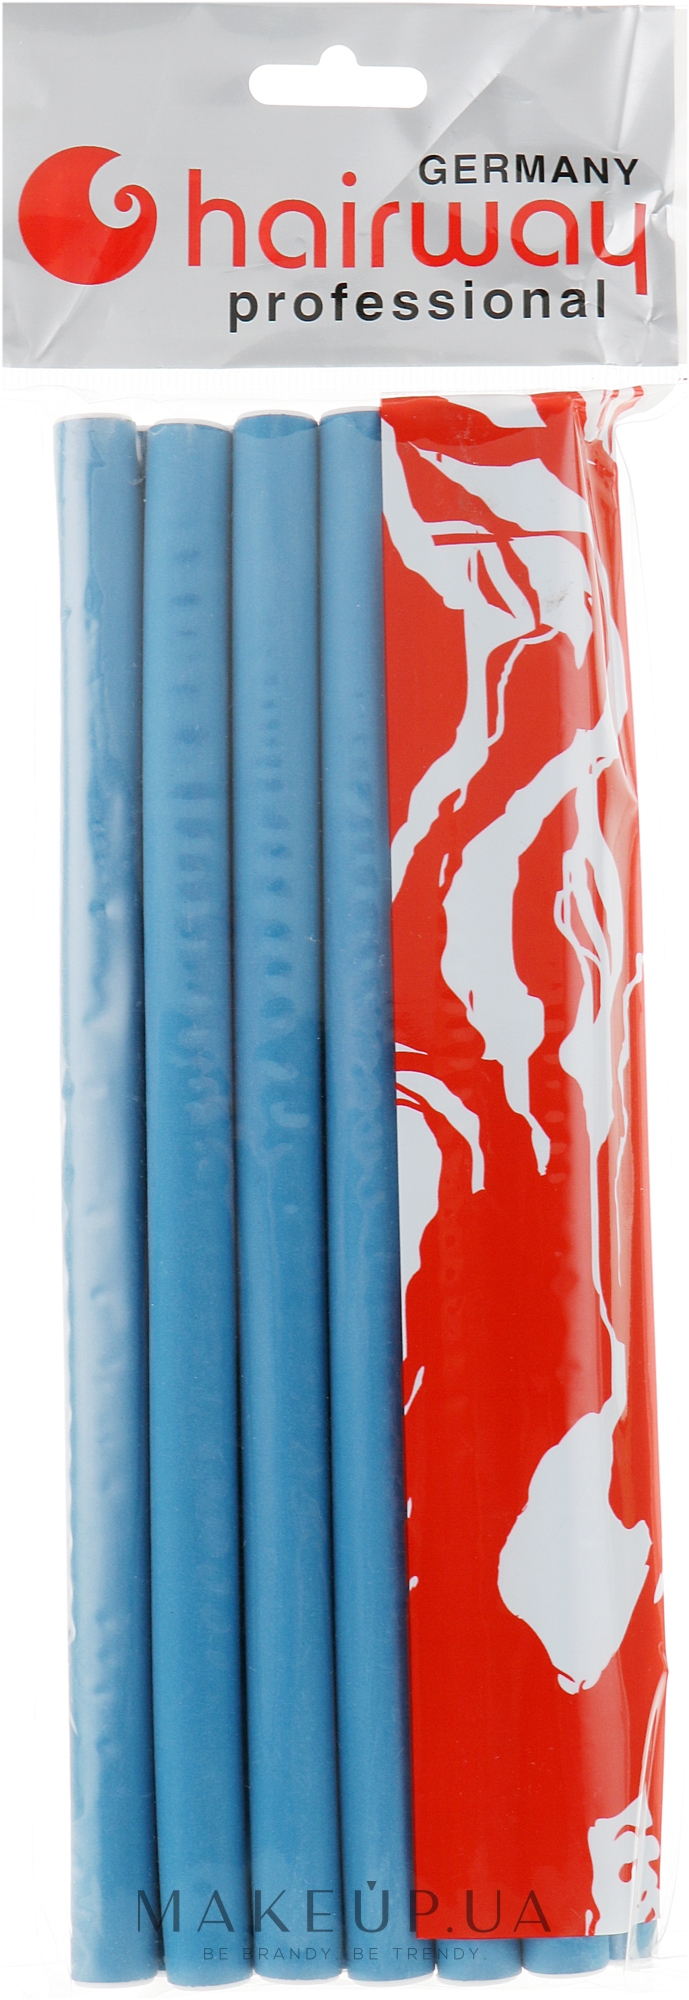 Гнучкі бігуді довжина 250мм d15, сині - Hairway Flex-Curler Flex Roller 25cm Blue — фото 12шт